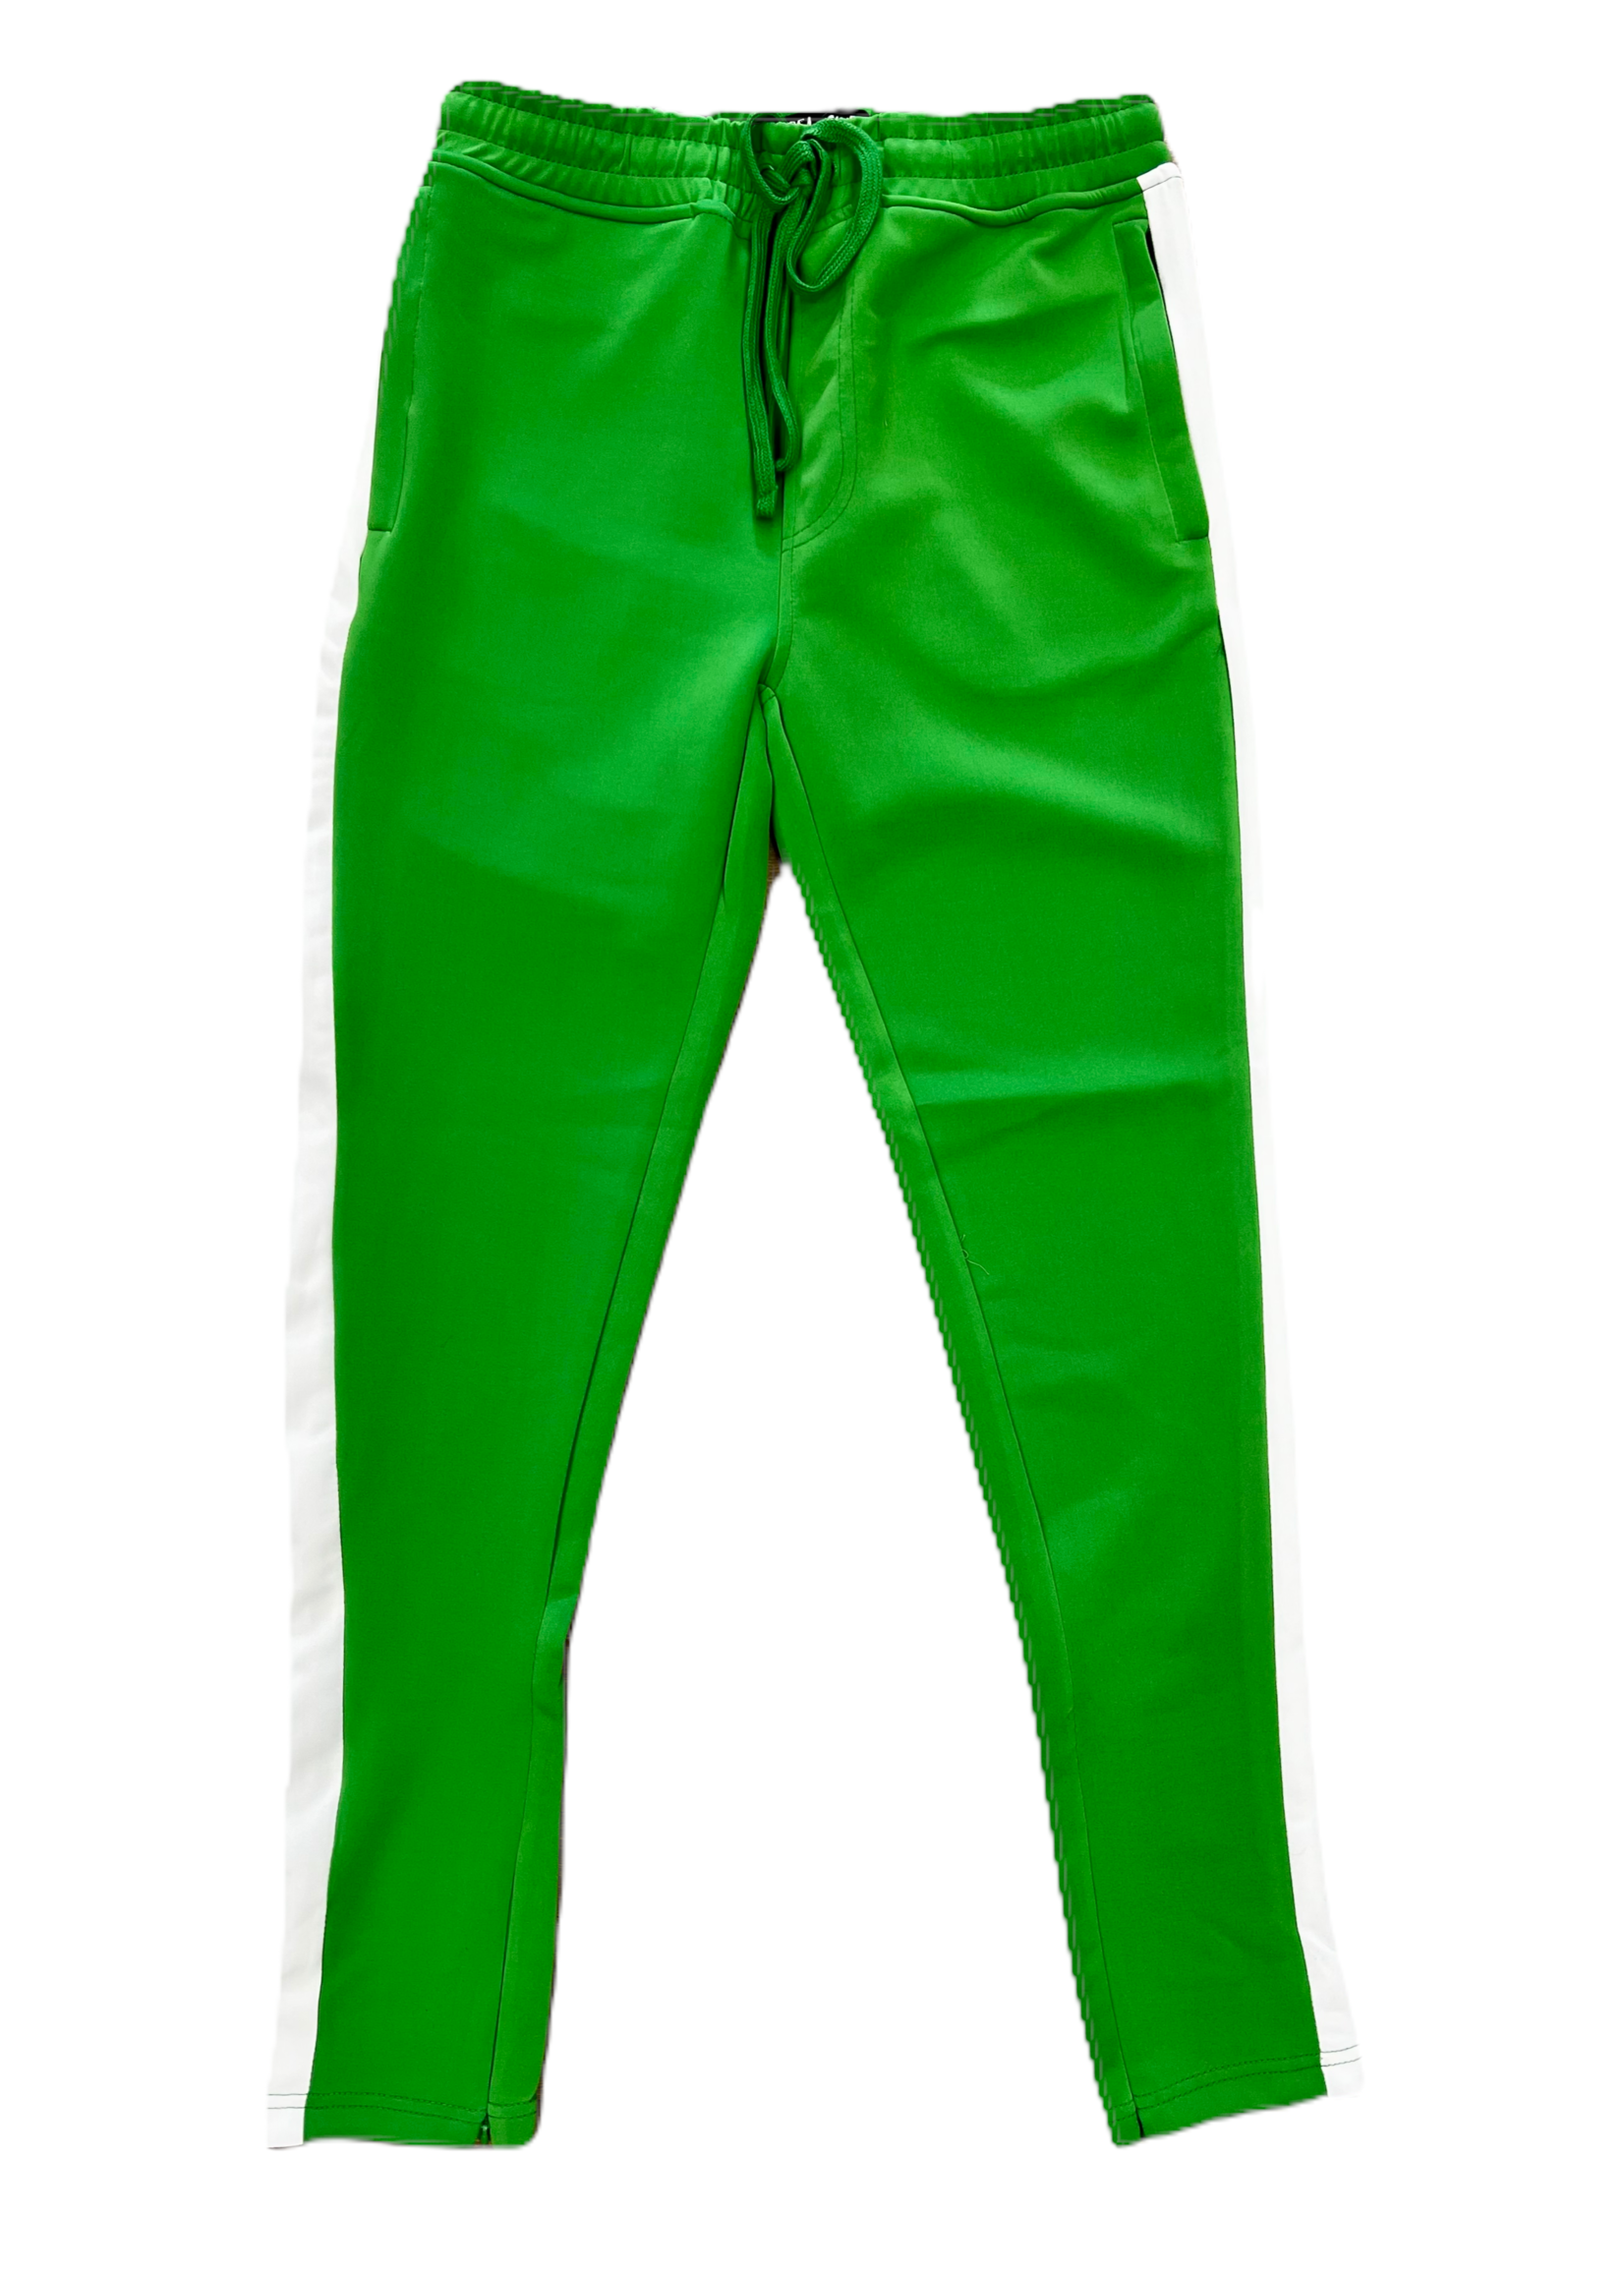 REBEL MINDS REBEL MINDS MEN'S JOGGER TRACK PANTS (Green Striped)